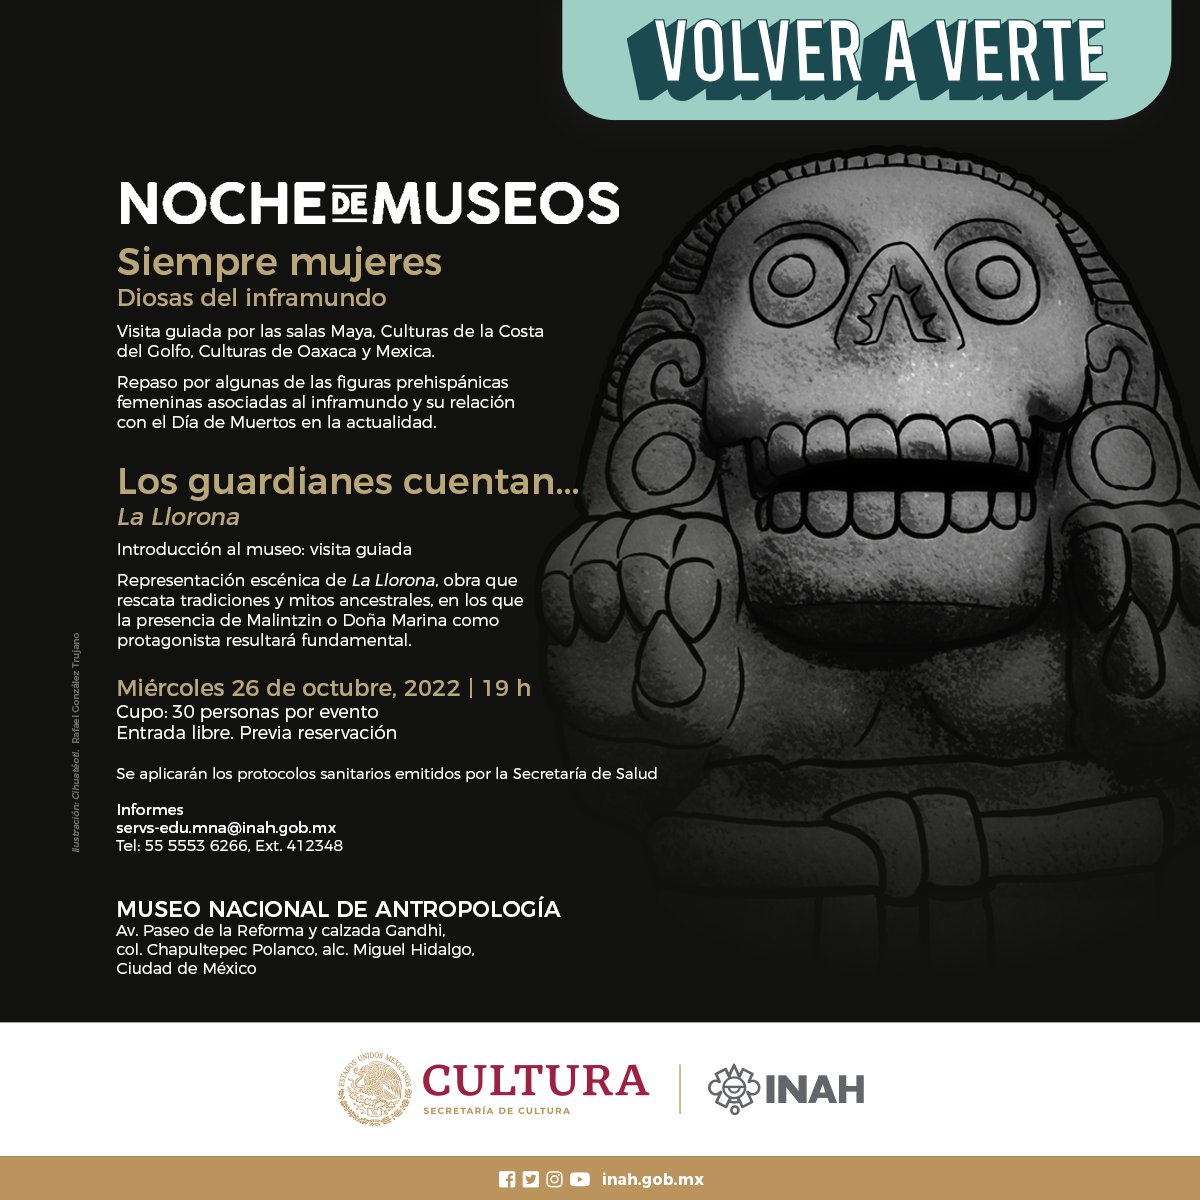 El Museo Nacional de Antropología te invita a su 🅽🅾🅲🅷🅴 🅳🅴 🅼🆄🆂🅴🅾🆂 📆26 de octubre 🕑19 h 📍@mna_inah #INAHVirtual #VolverAVerte